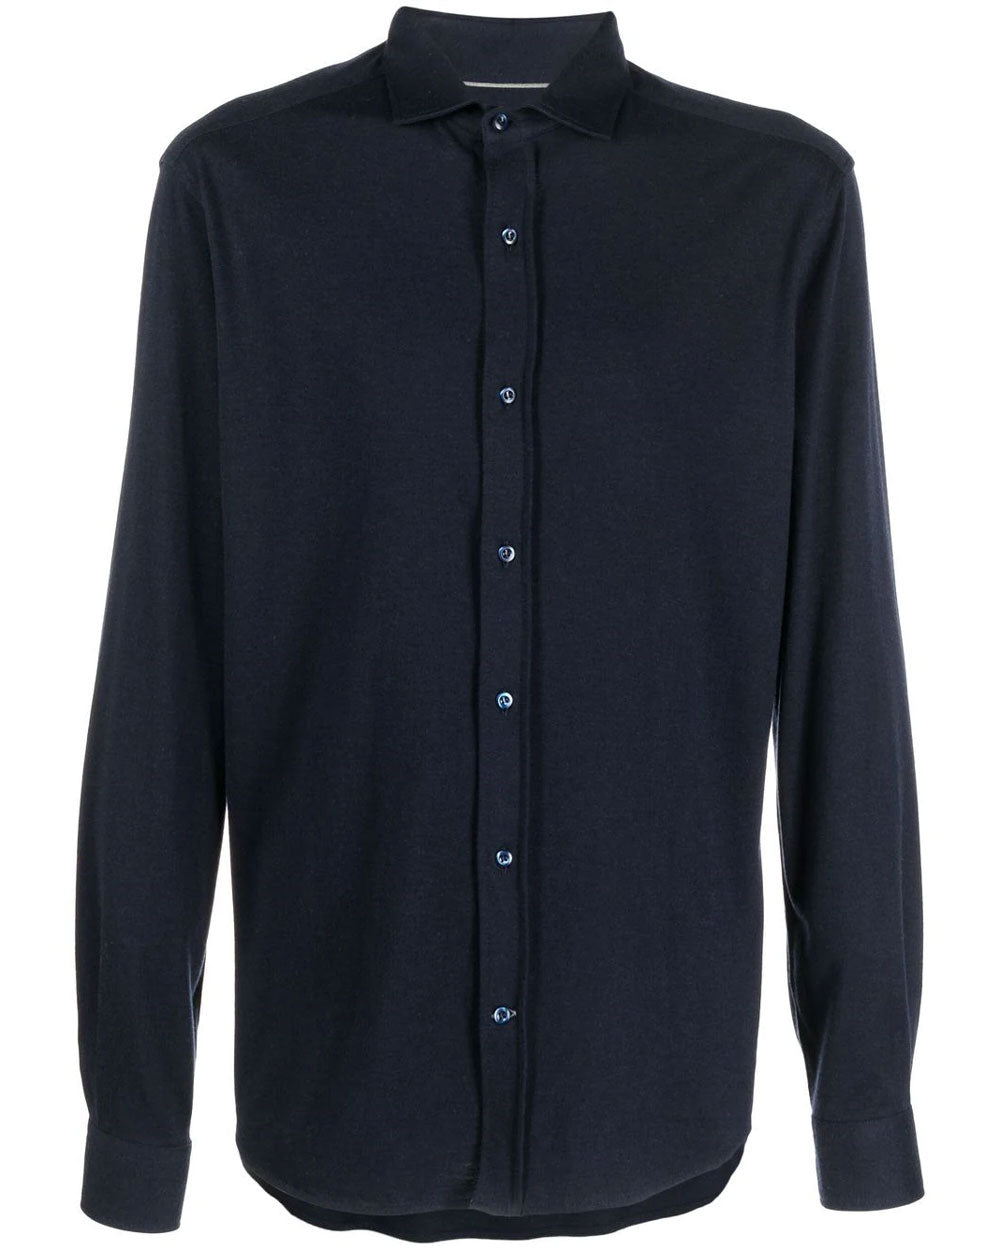 Ocean Blue Cotton and Silk Sport Shirt